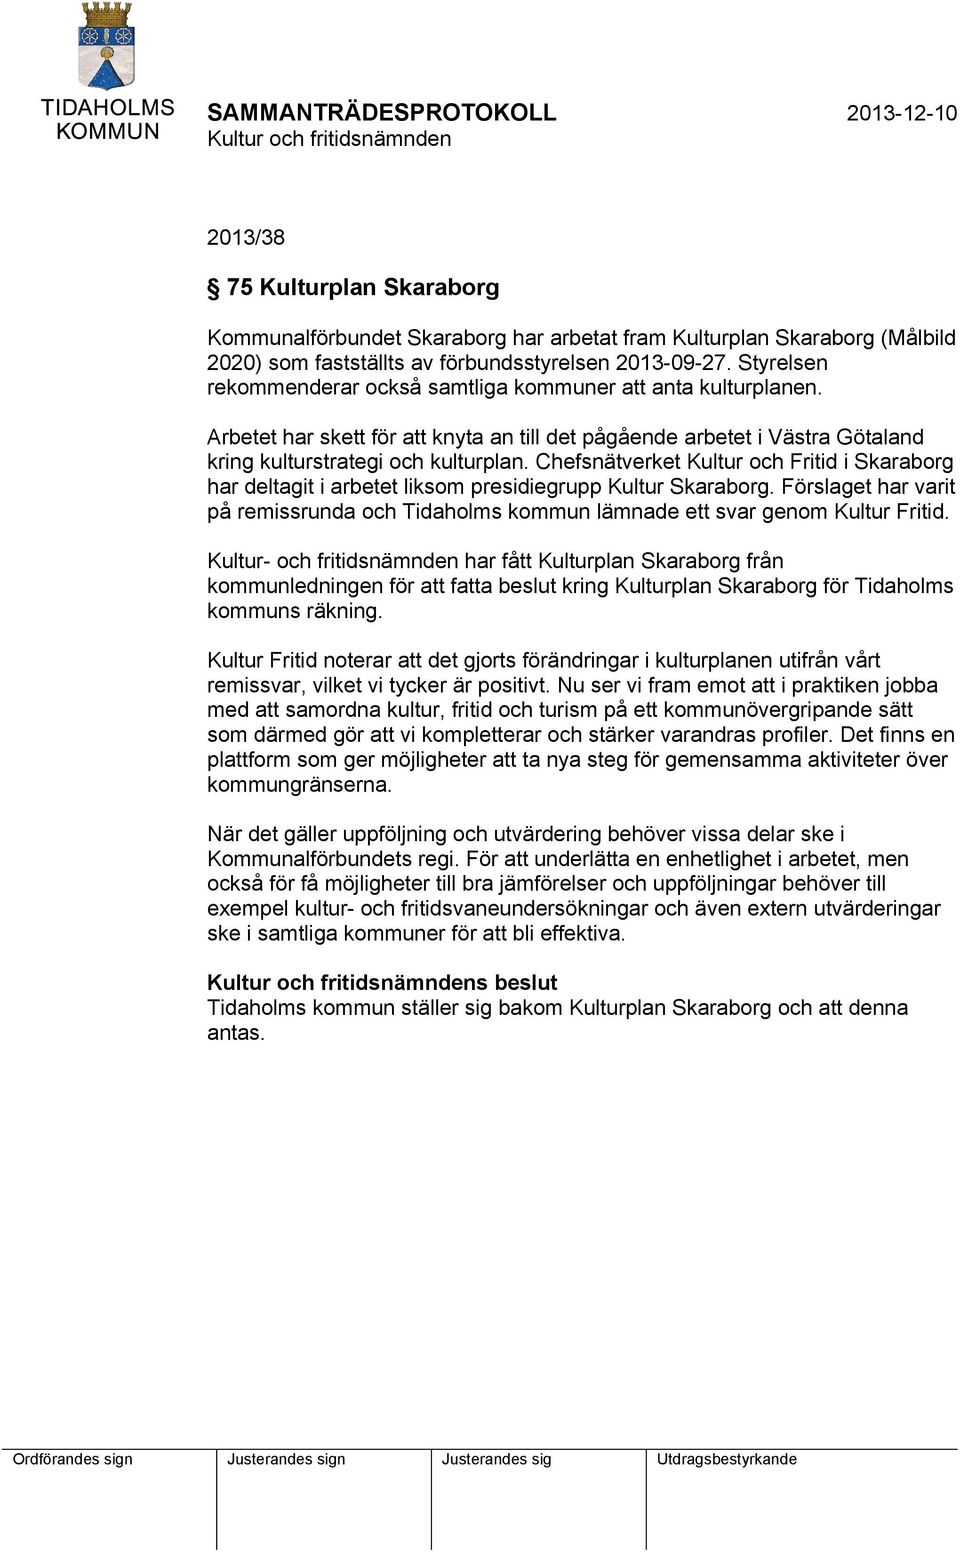 Chefsnätverket Kultur och Fritid i Skaraborg har deltagit i arbetet liksom presidiegrupp Kultur Skaraborg. Förslaget har varit på remissrunda och Tidaholms kommun lämnade ett svar genom Kultur Fritid.